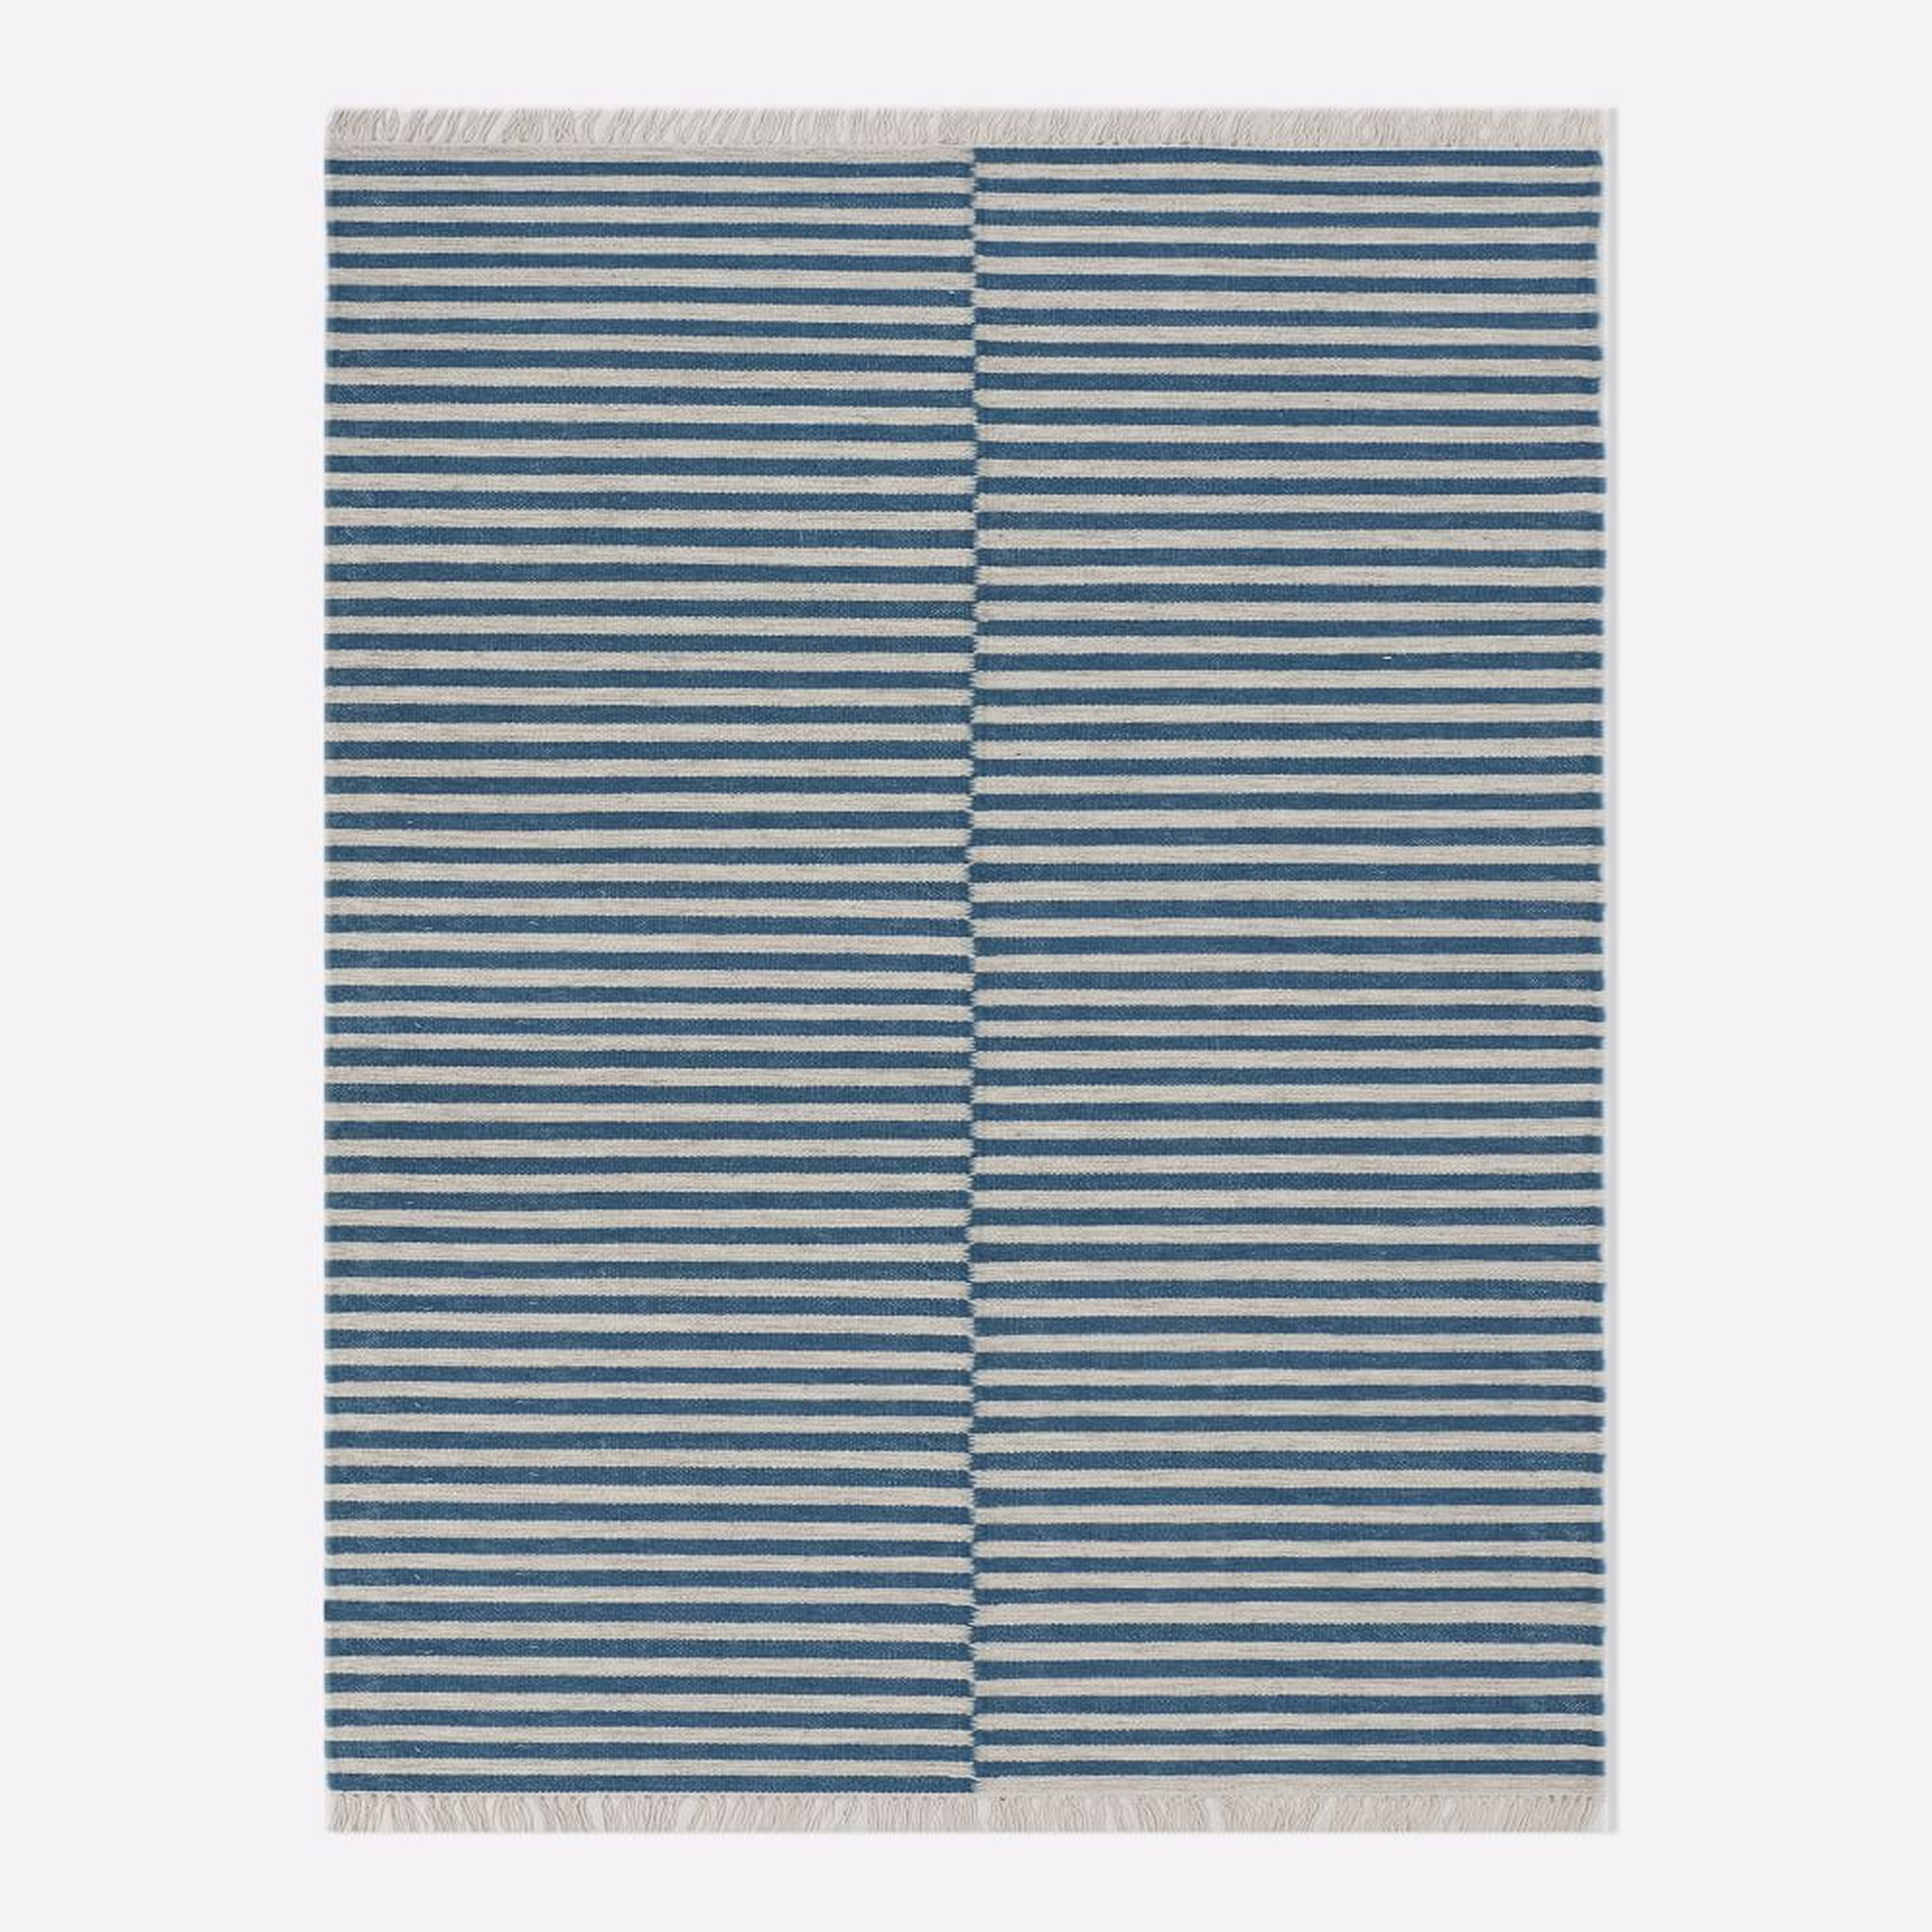 Staggered Stripe Rug, 8x10, Blue Teal - West Elm